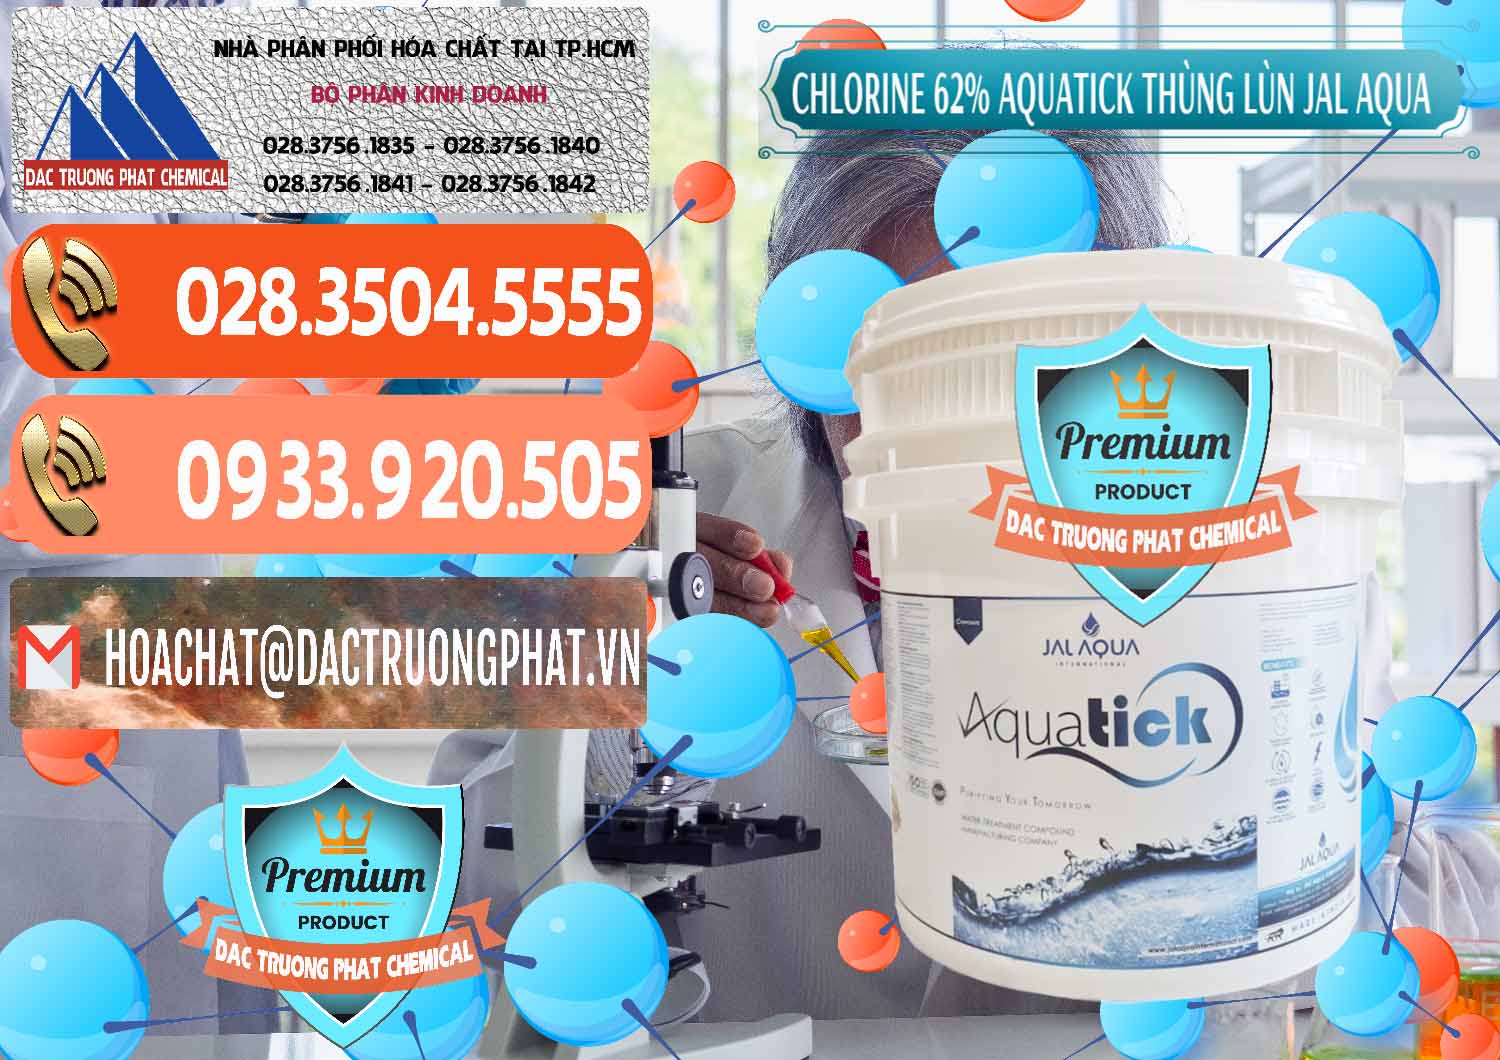 Công ty chuyên bán và cung ứng Chlorine – Clorin 62% Aquatick Thùng Lùn Jal Aqua Ấn Độ India - 0238 - Chuyên kinh doanh & phân phối hóa chất tại TP.HCM - hoachatmientay.com